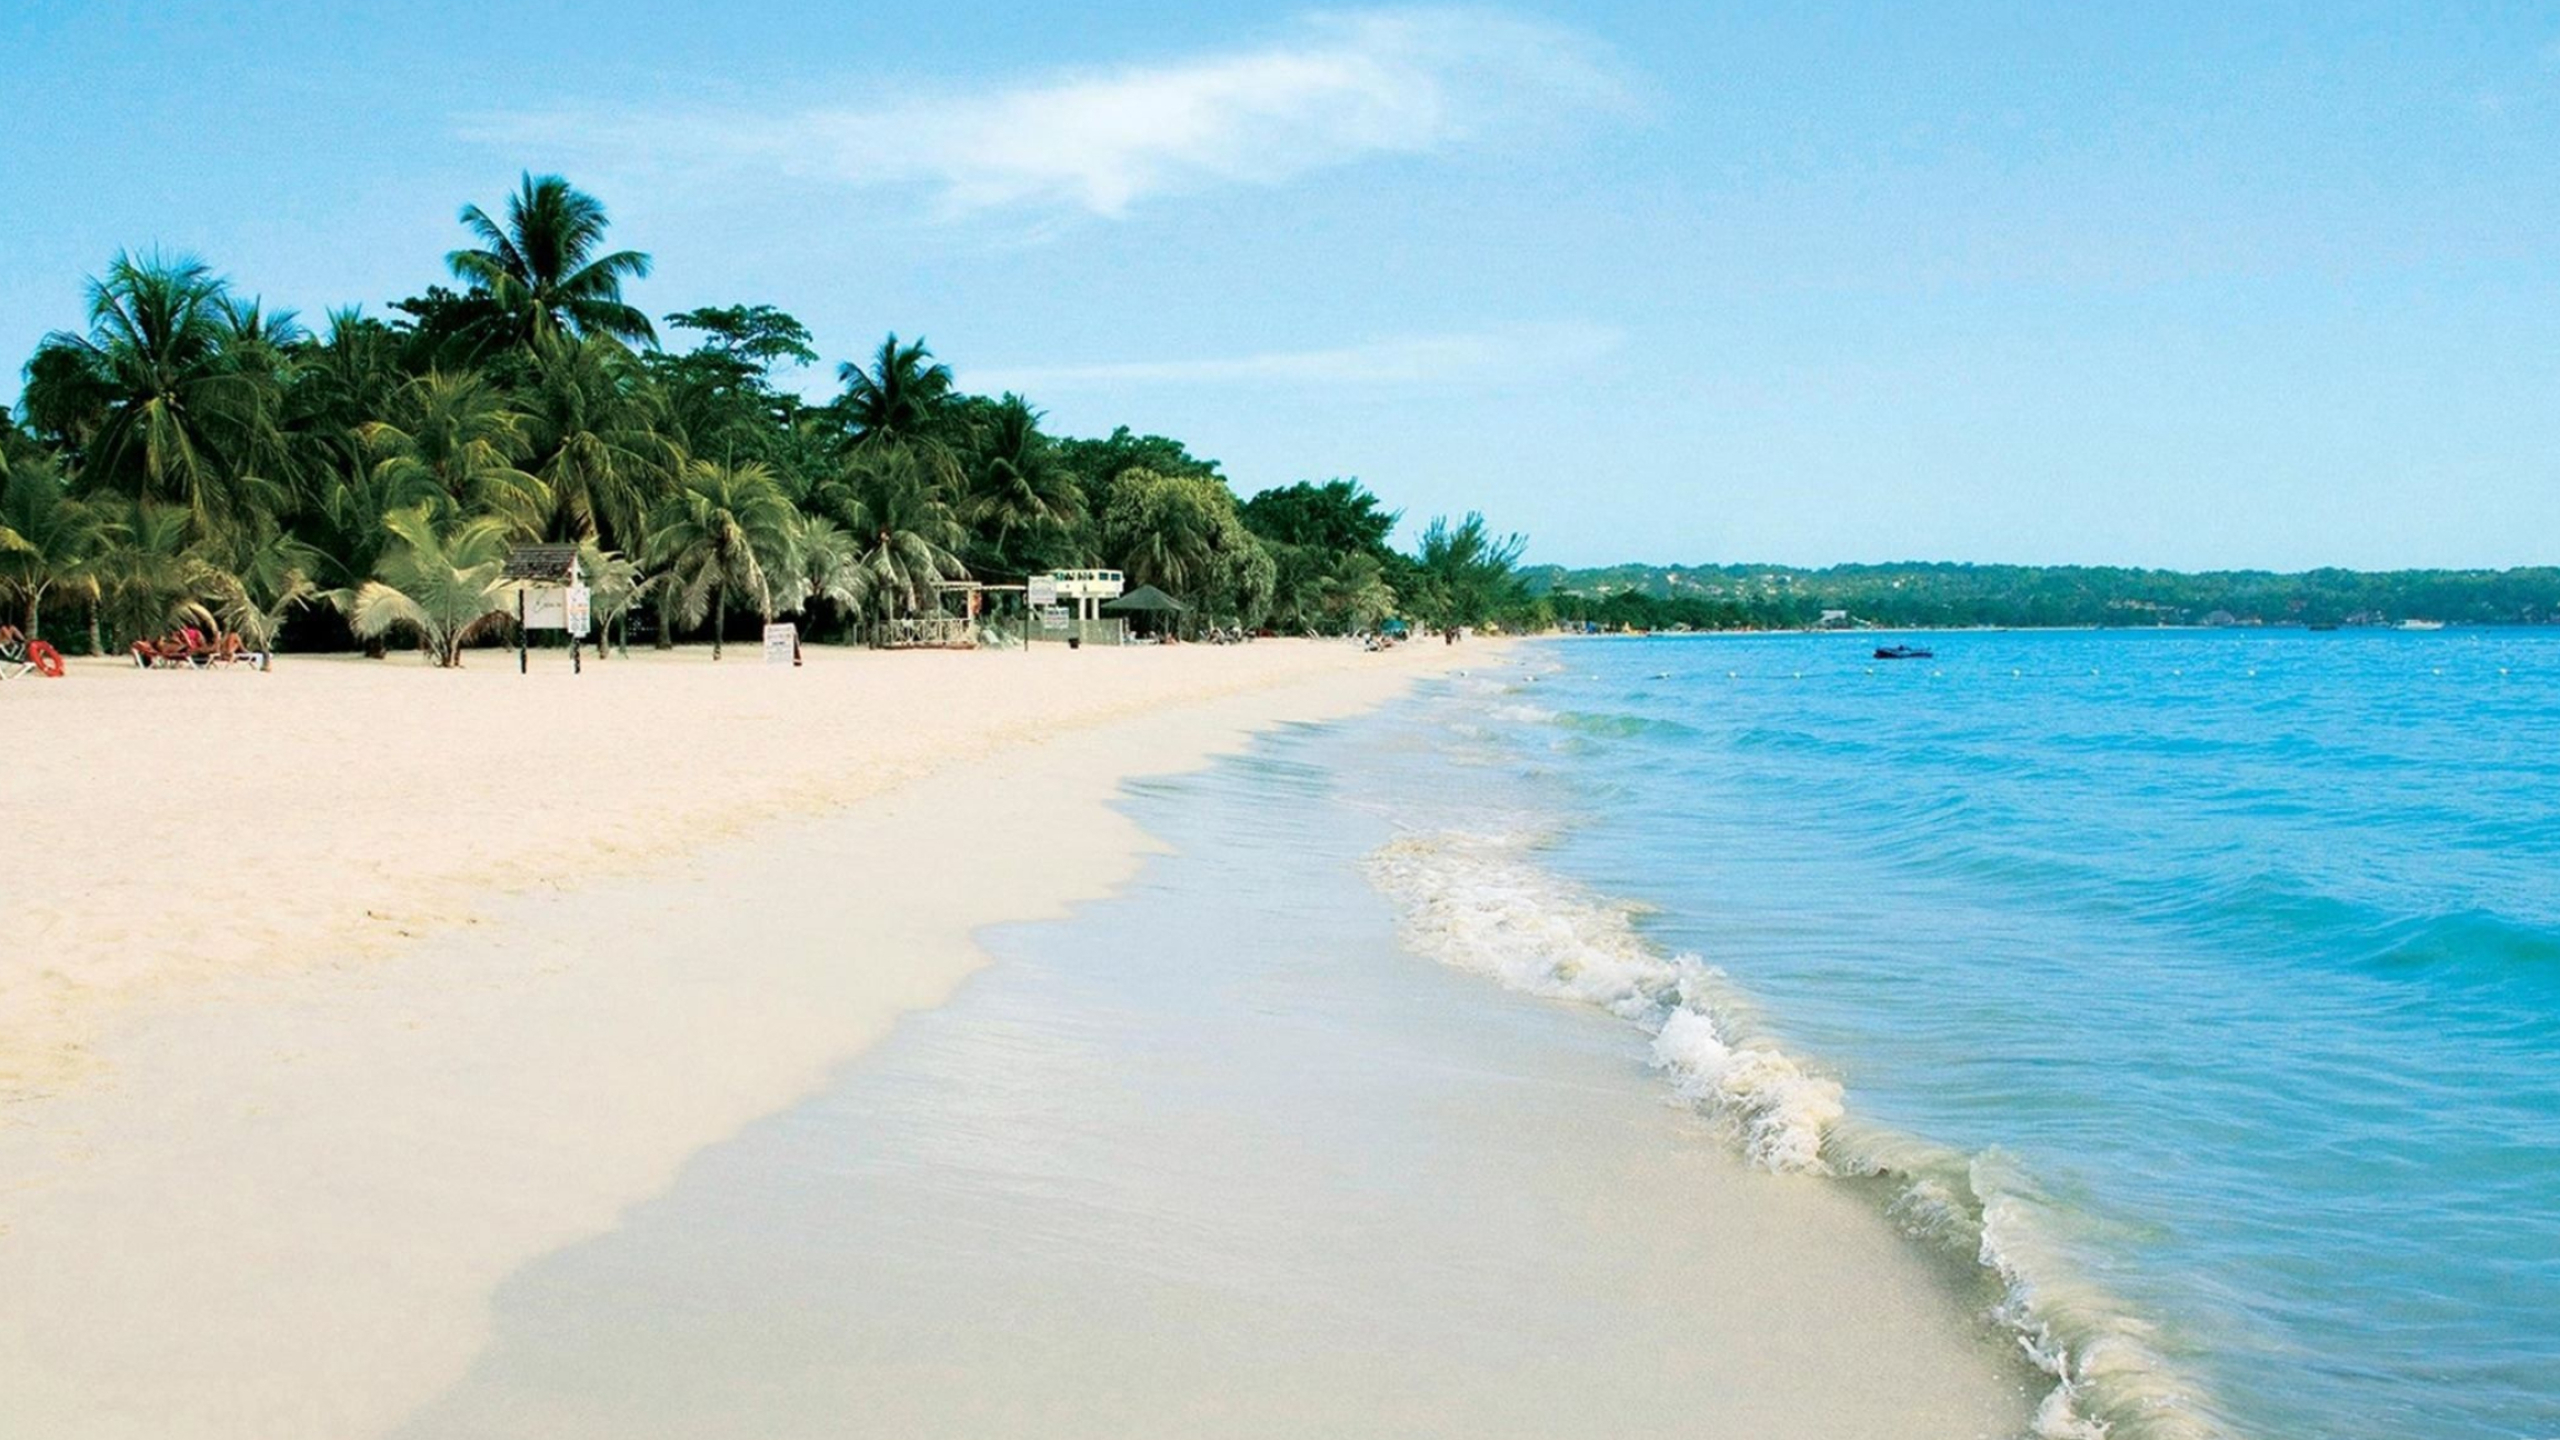 Jamaica beach desktop wallpapers, Coastal landscapes, Beach relaxation, Tropical getaway, 2560x1440 HD Desktop